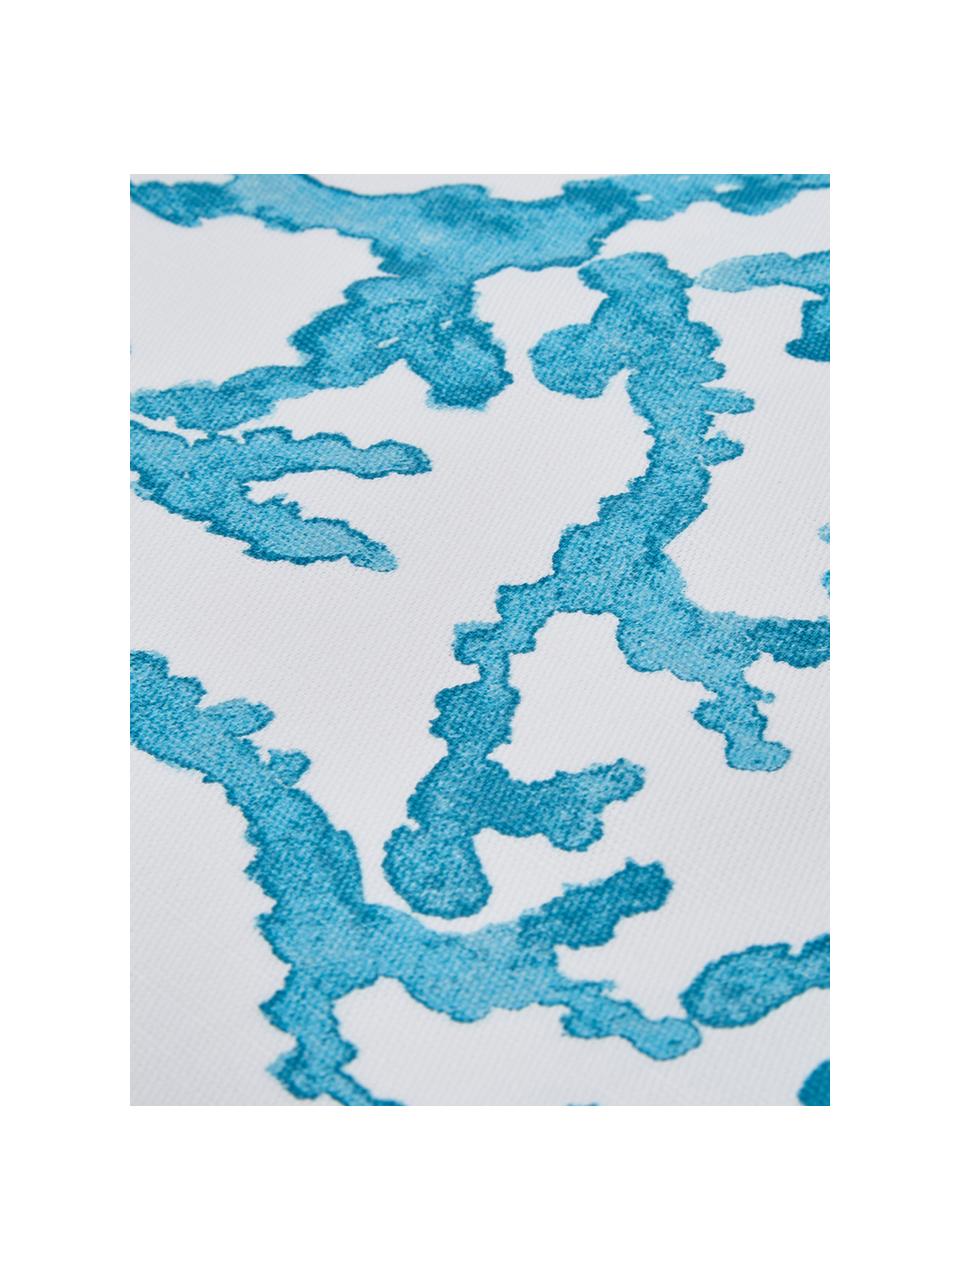 Tovaglia in cotone con stampa corallo Estran, Cotone, Blu, bianco, Per 4-6 persone (Larg.160 x Lung. 160 cm)